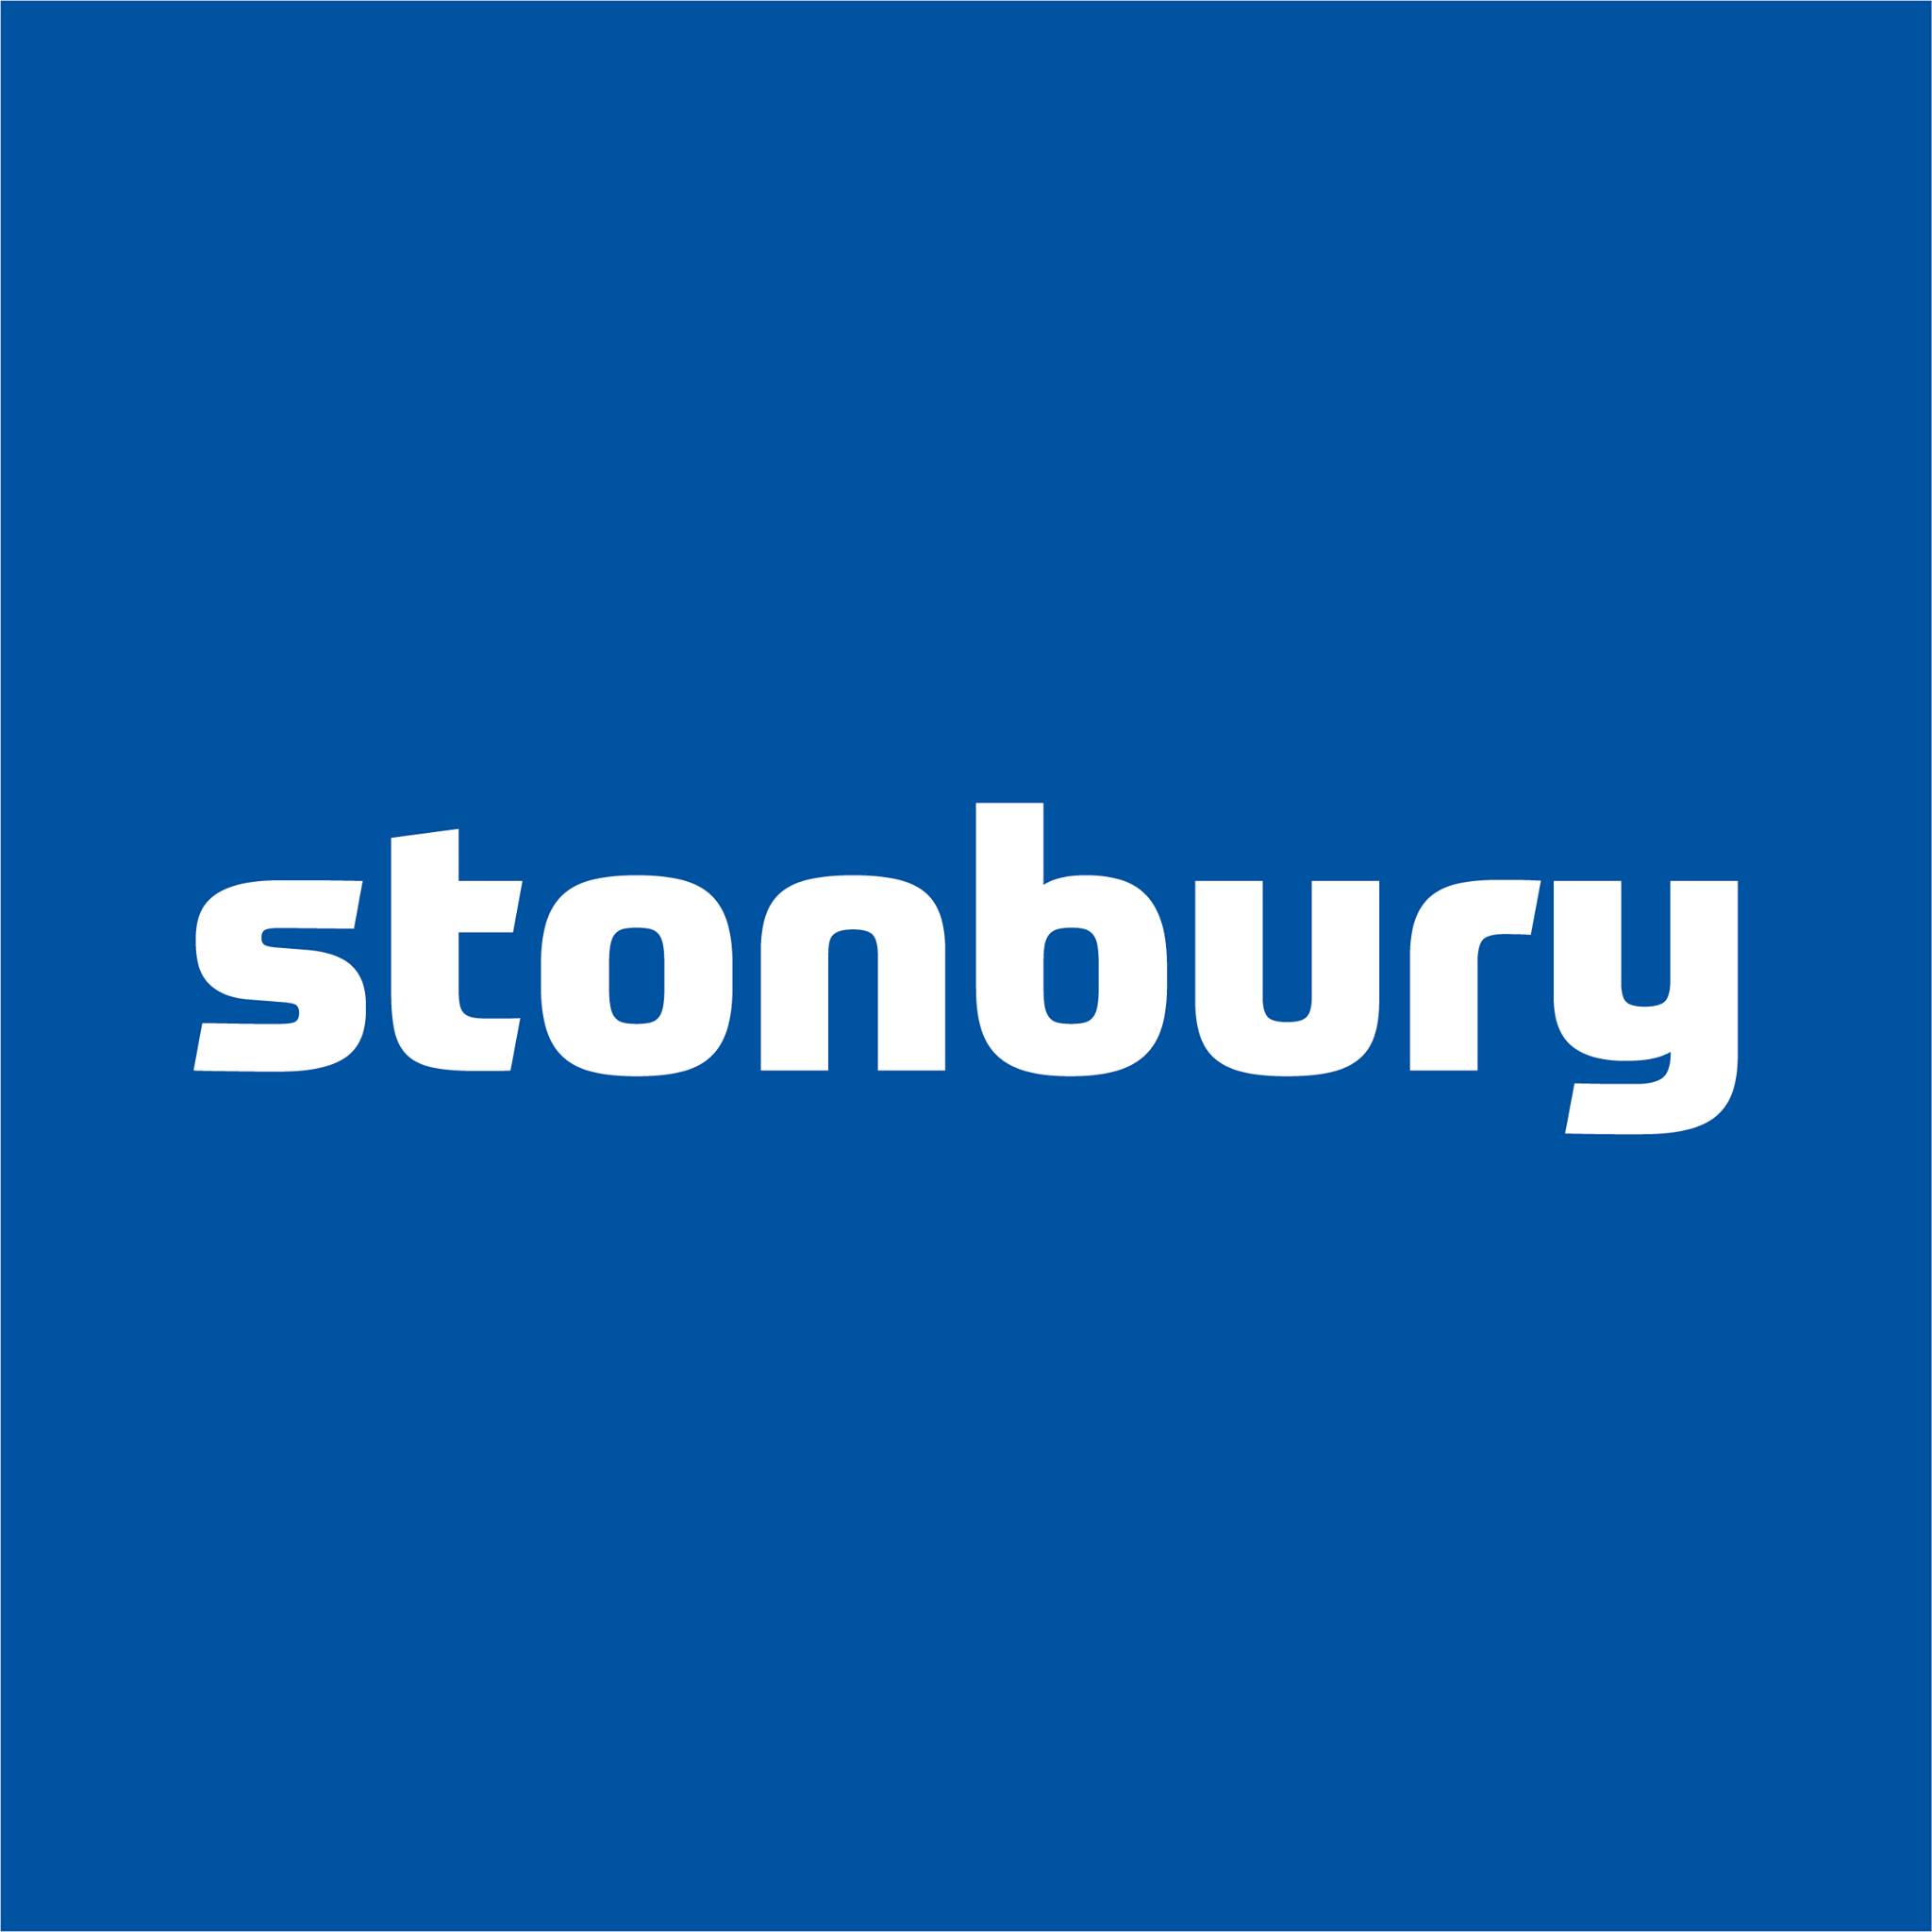 Stonbury - Senior Leadership Safety Tour